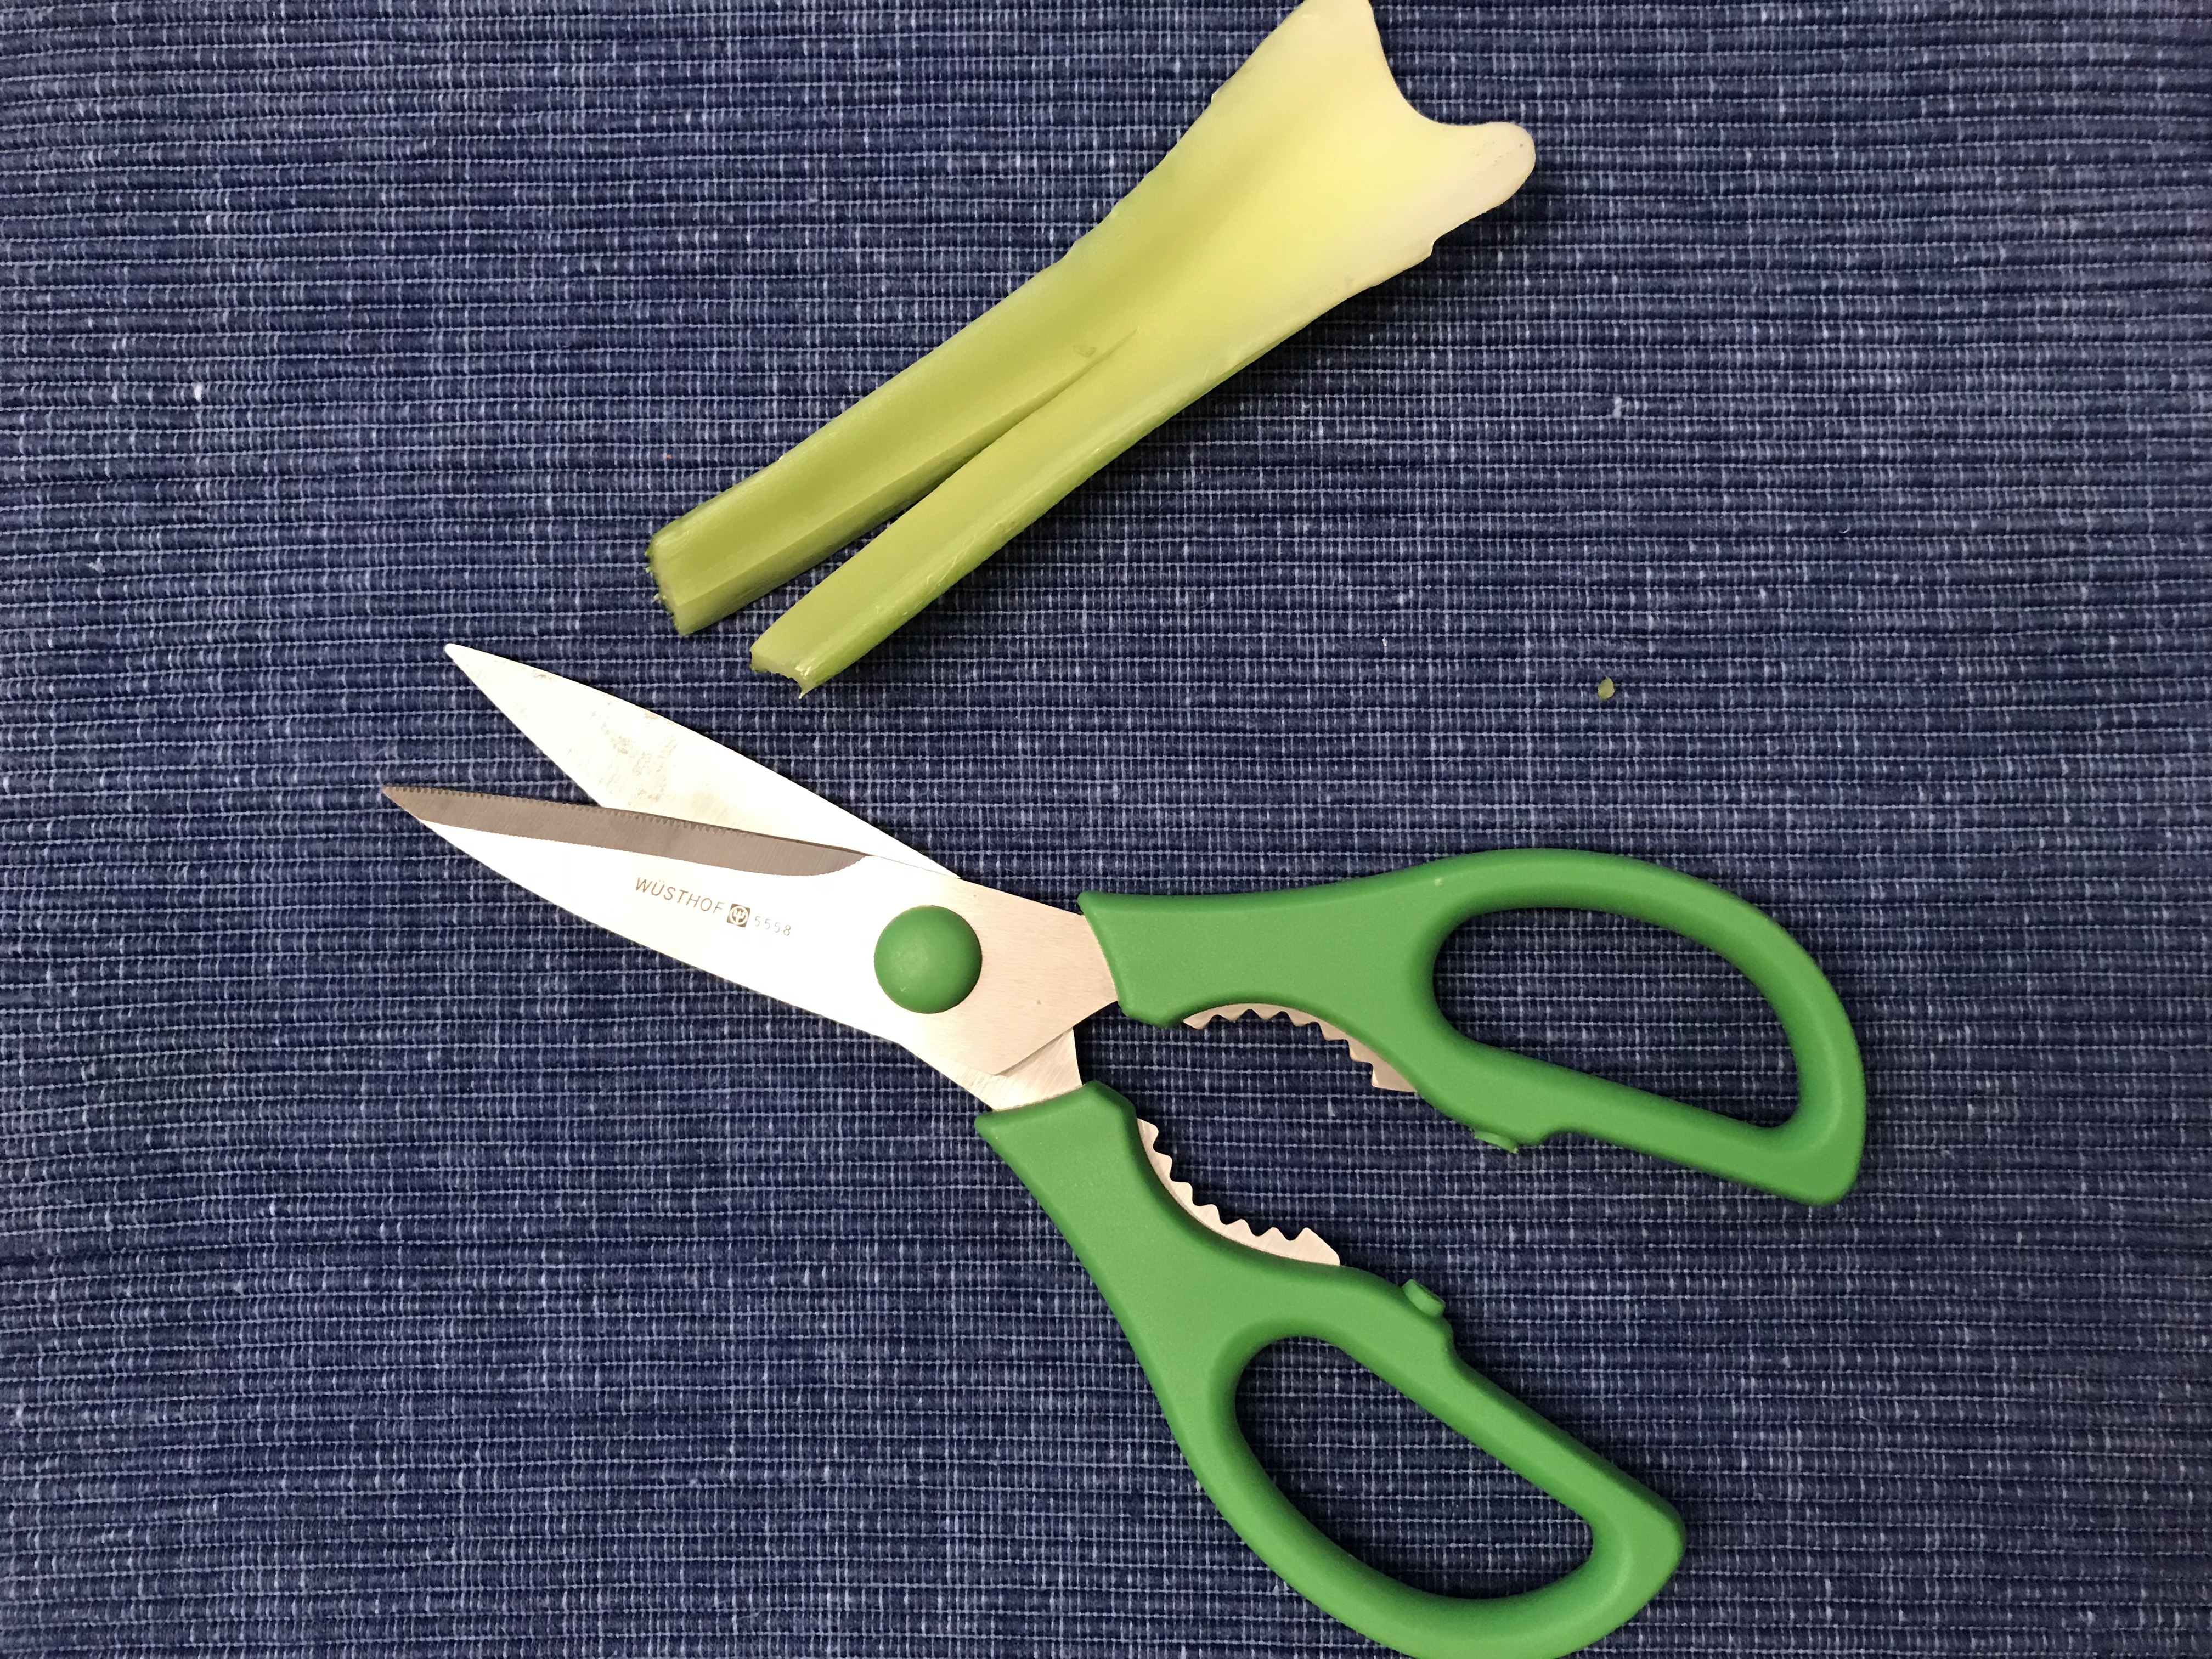 Scissors and celery